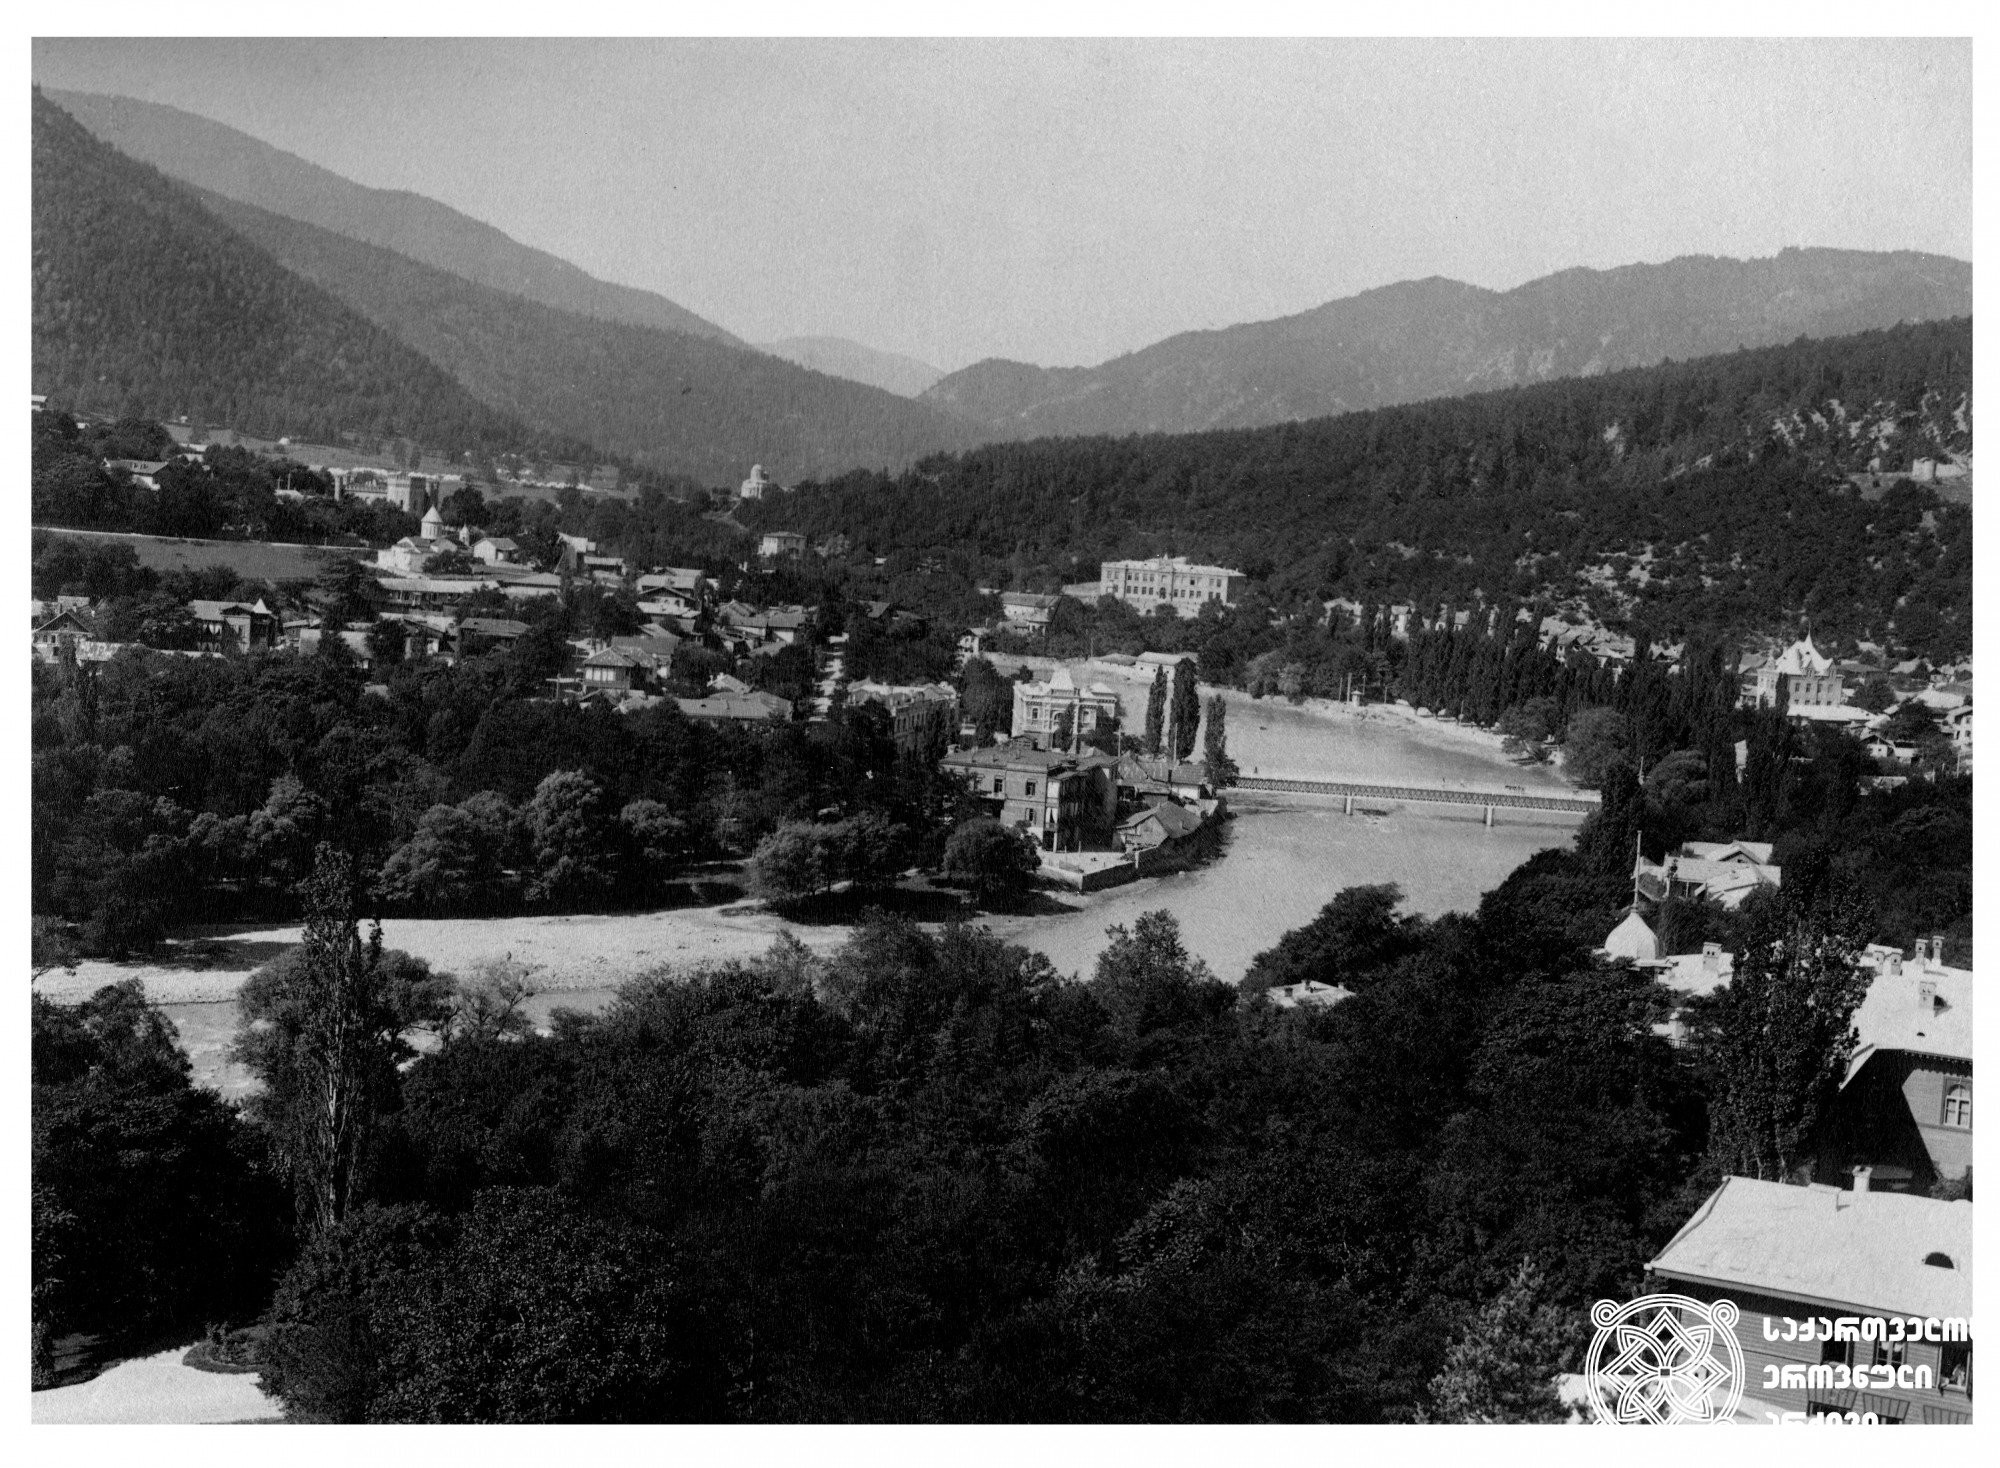 ბორჯომის საერთო ხედი. <br>
ფოტო: დიმიტრი ერმაკოვის ფოტოკოლექციიდან. <br>
[1890-1910]. <br>

General view of Borjomi. <br>
Photo from Dmitry Ermakov’s collection. <br>
[1890-1910].